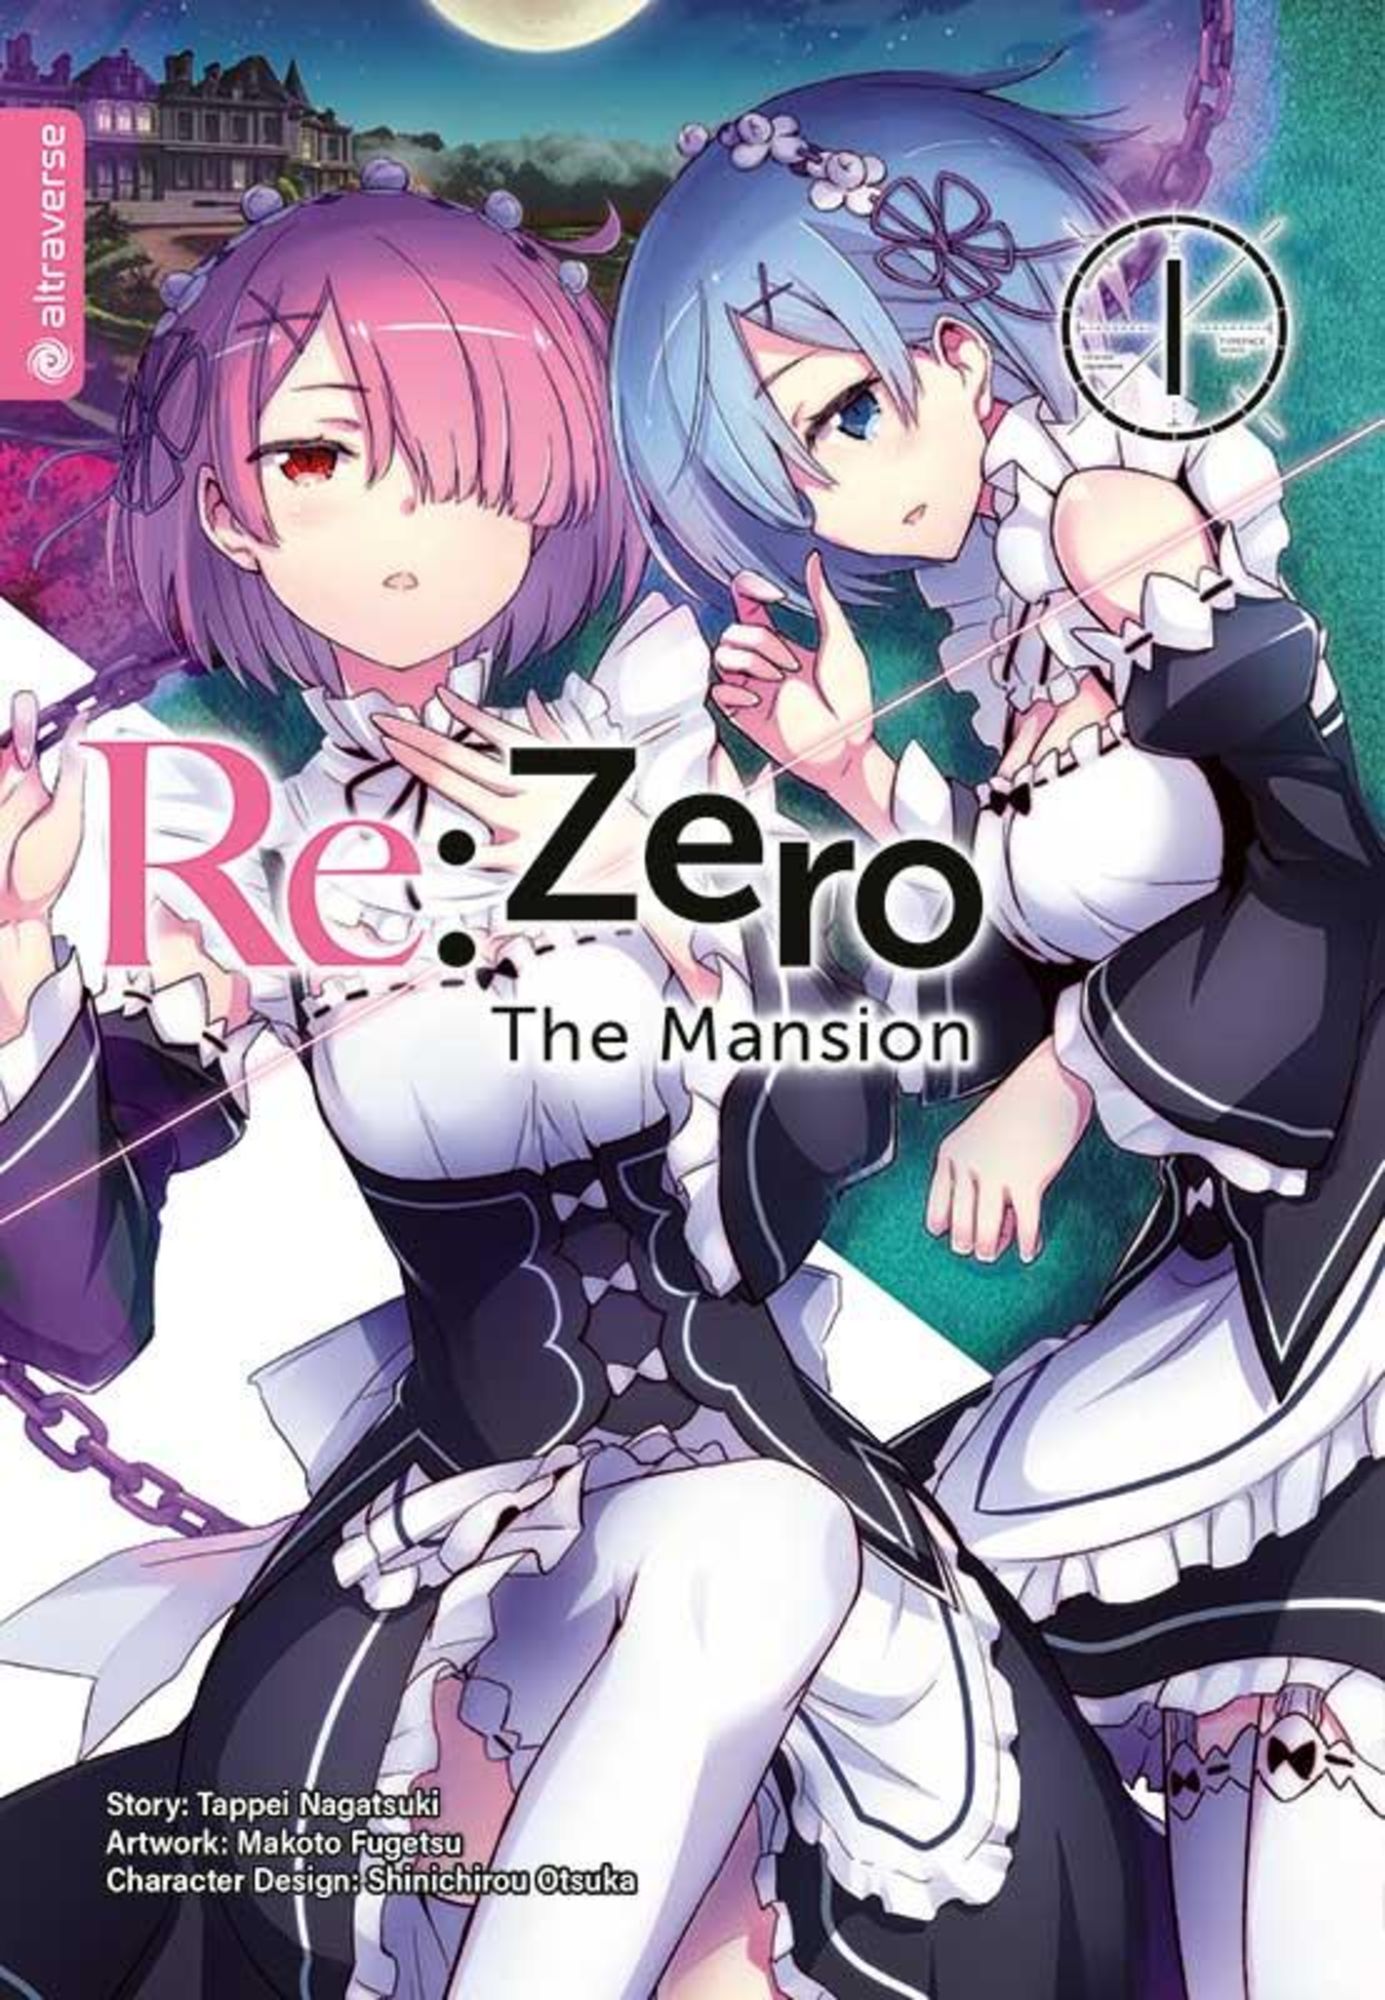 Re zero manga deutsch